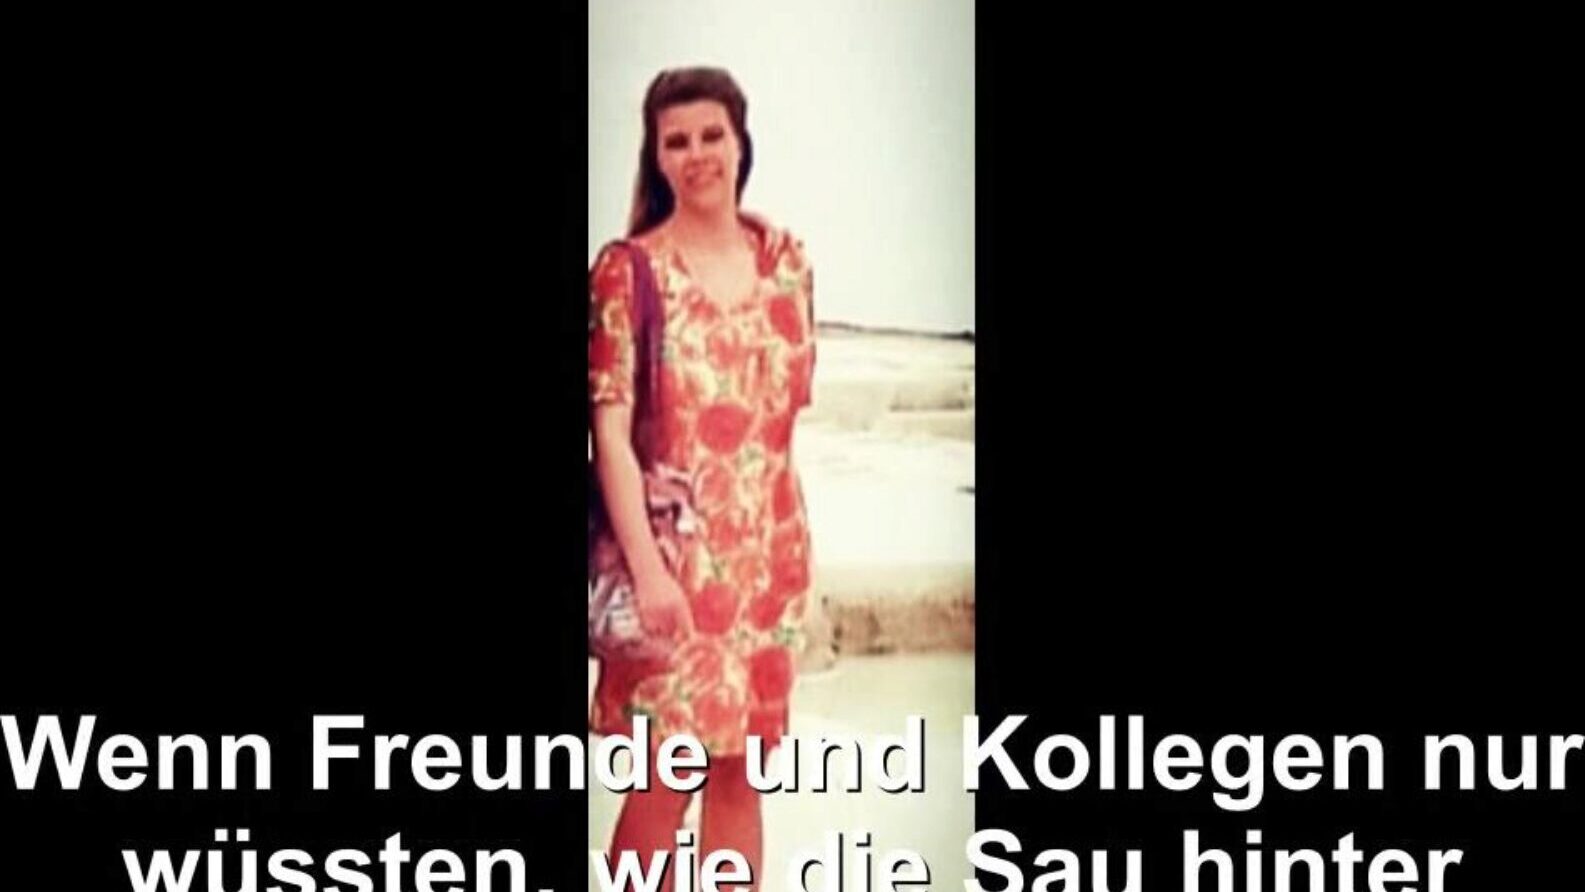 γερμανική νοικοκυρά εκτεθειμένη, δωρεάν σωλήνα γερμανική hd porn bd ρολόι γερμανική νοικοκυρά εκτεθειμένη σκηνή ταινίας στο xhamster, η μεγαλύτερη ιστοσελίδα HD Lovemaking Tube με τόνους δωρεάν για όλους σωλήνα Γερμανική σύζυγος και σπιτικές πορνό ταινίες